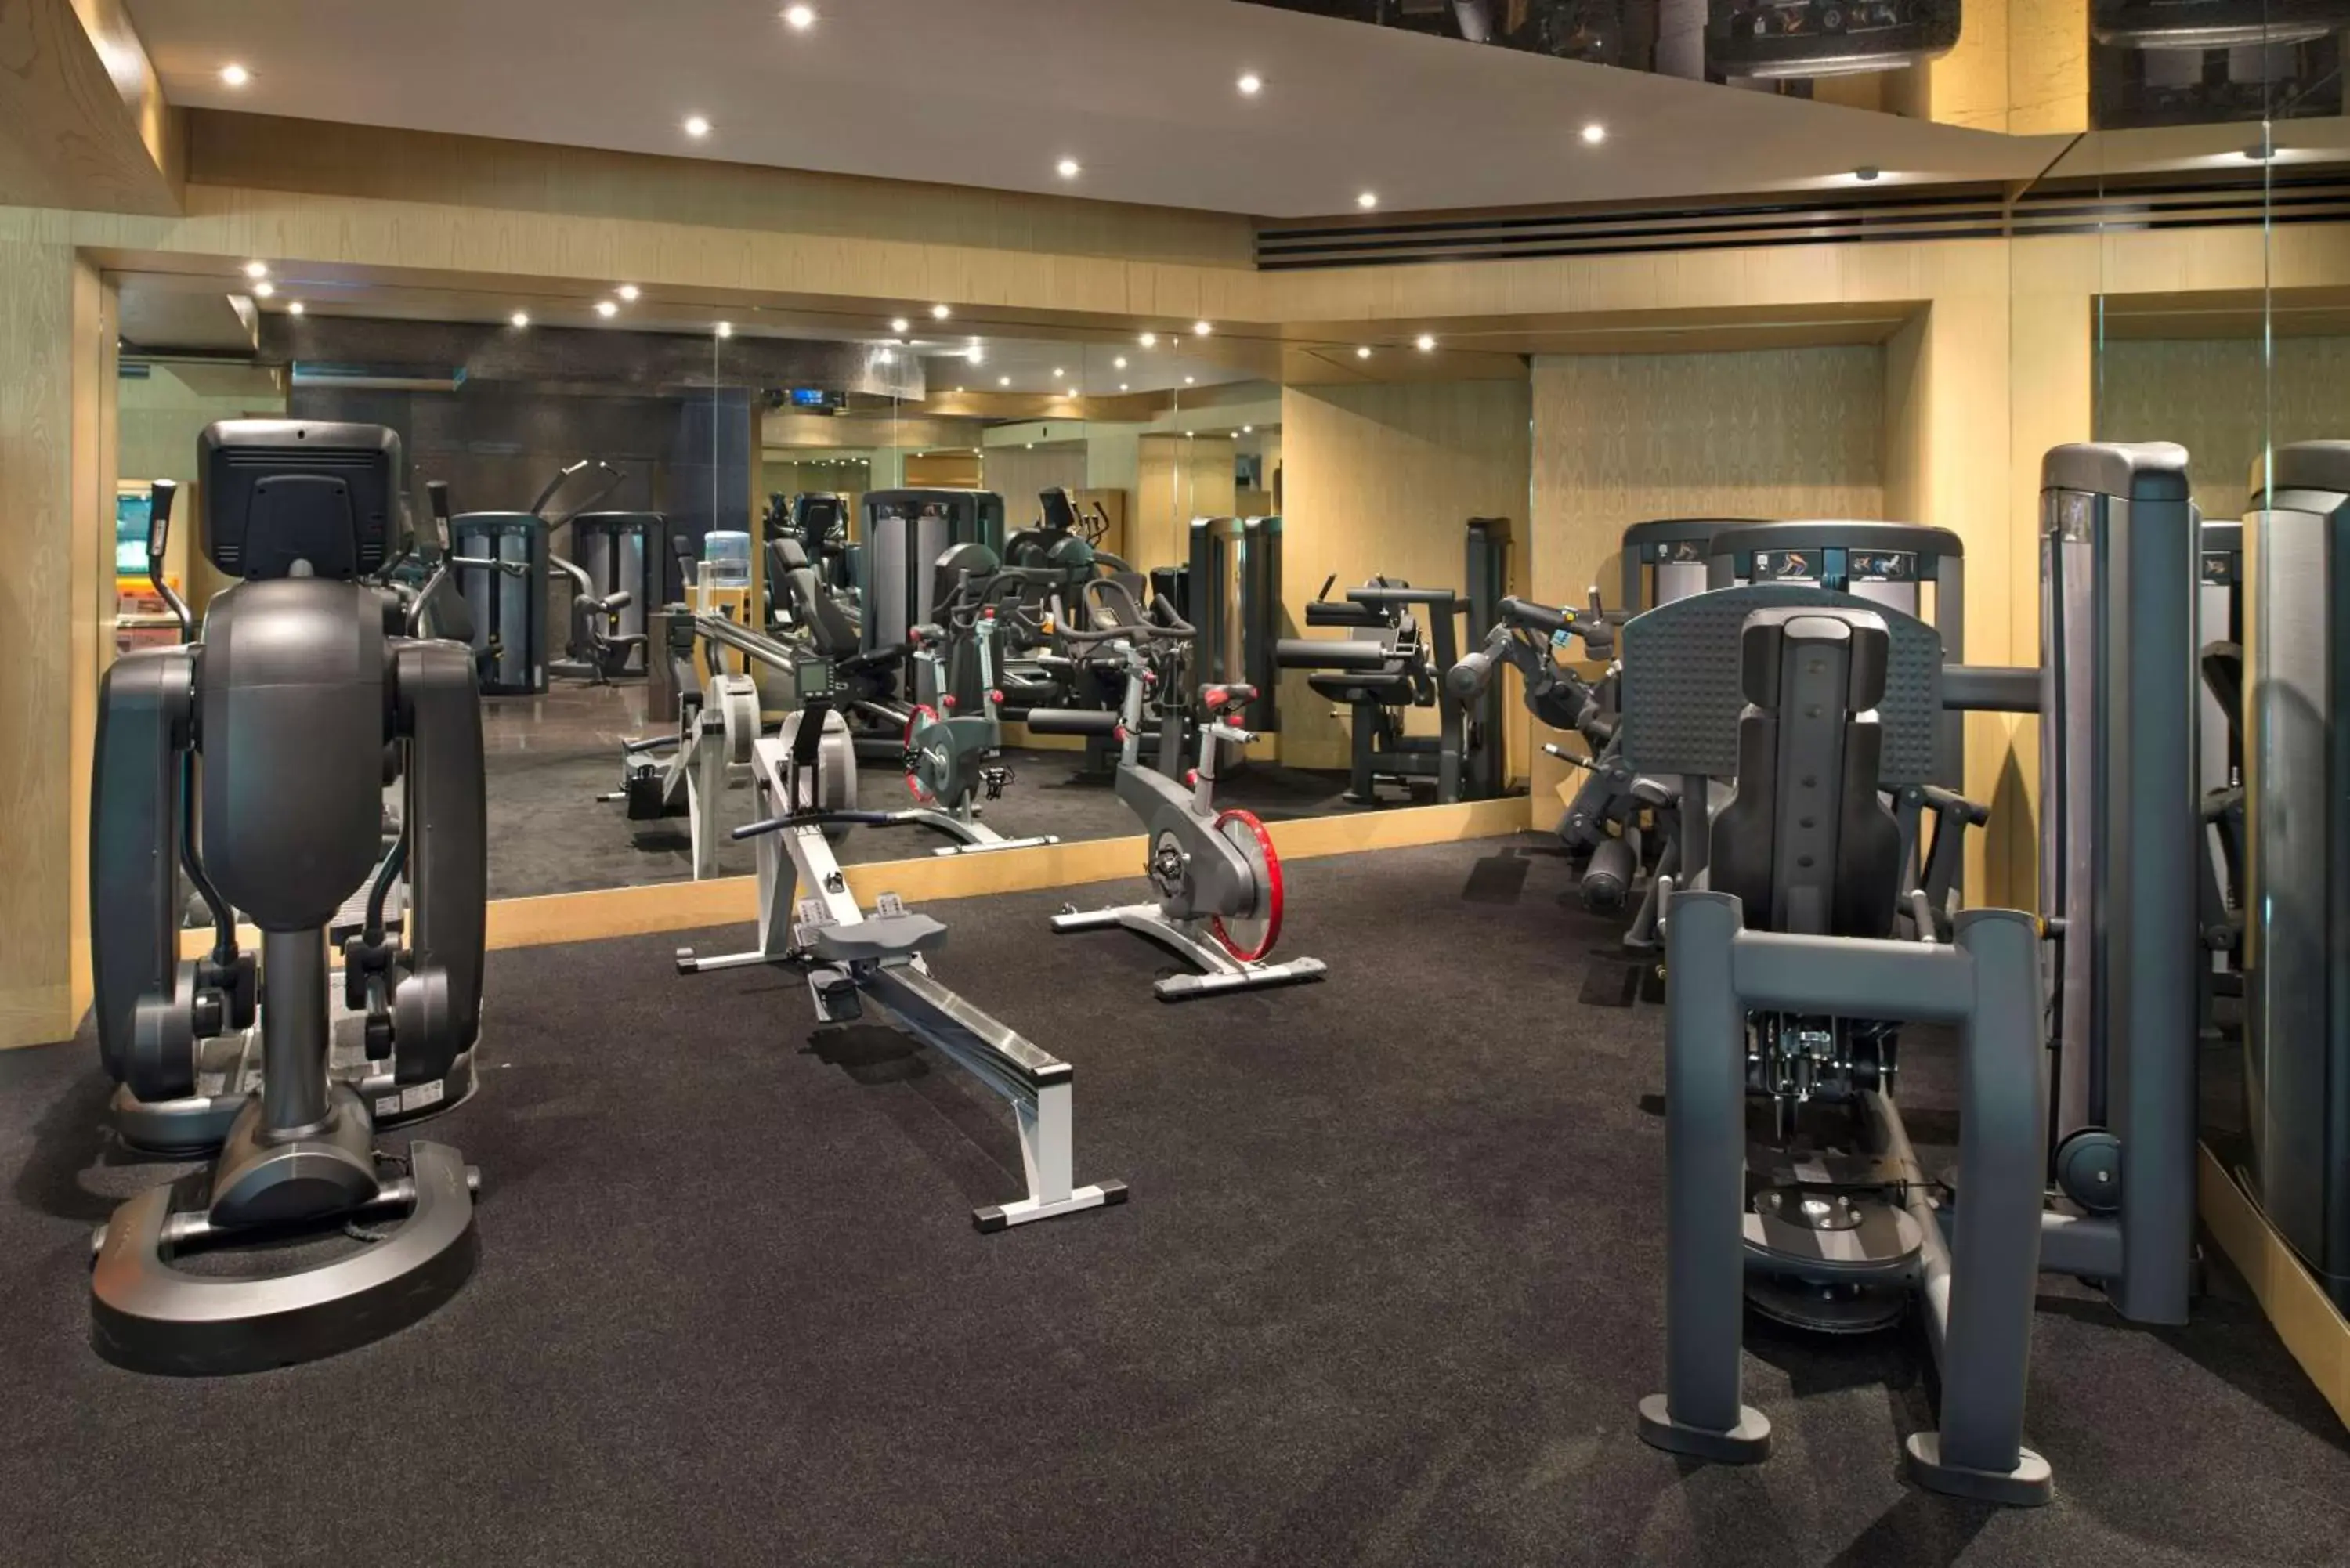 Fitness centre/facilities, Fitness Center/Facilities in Grand Hyatt Hong Kong